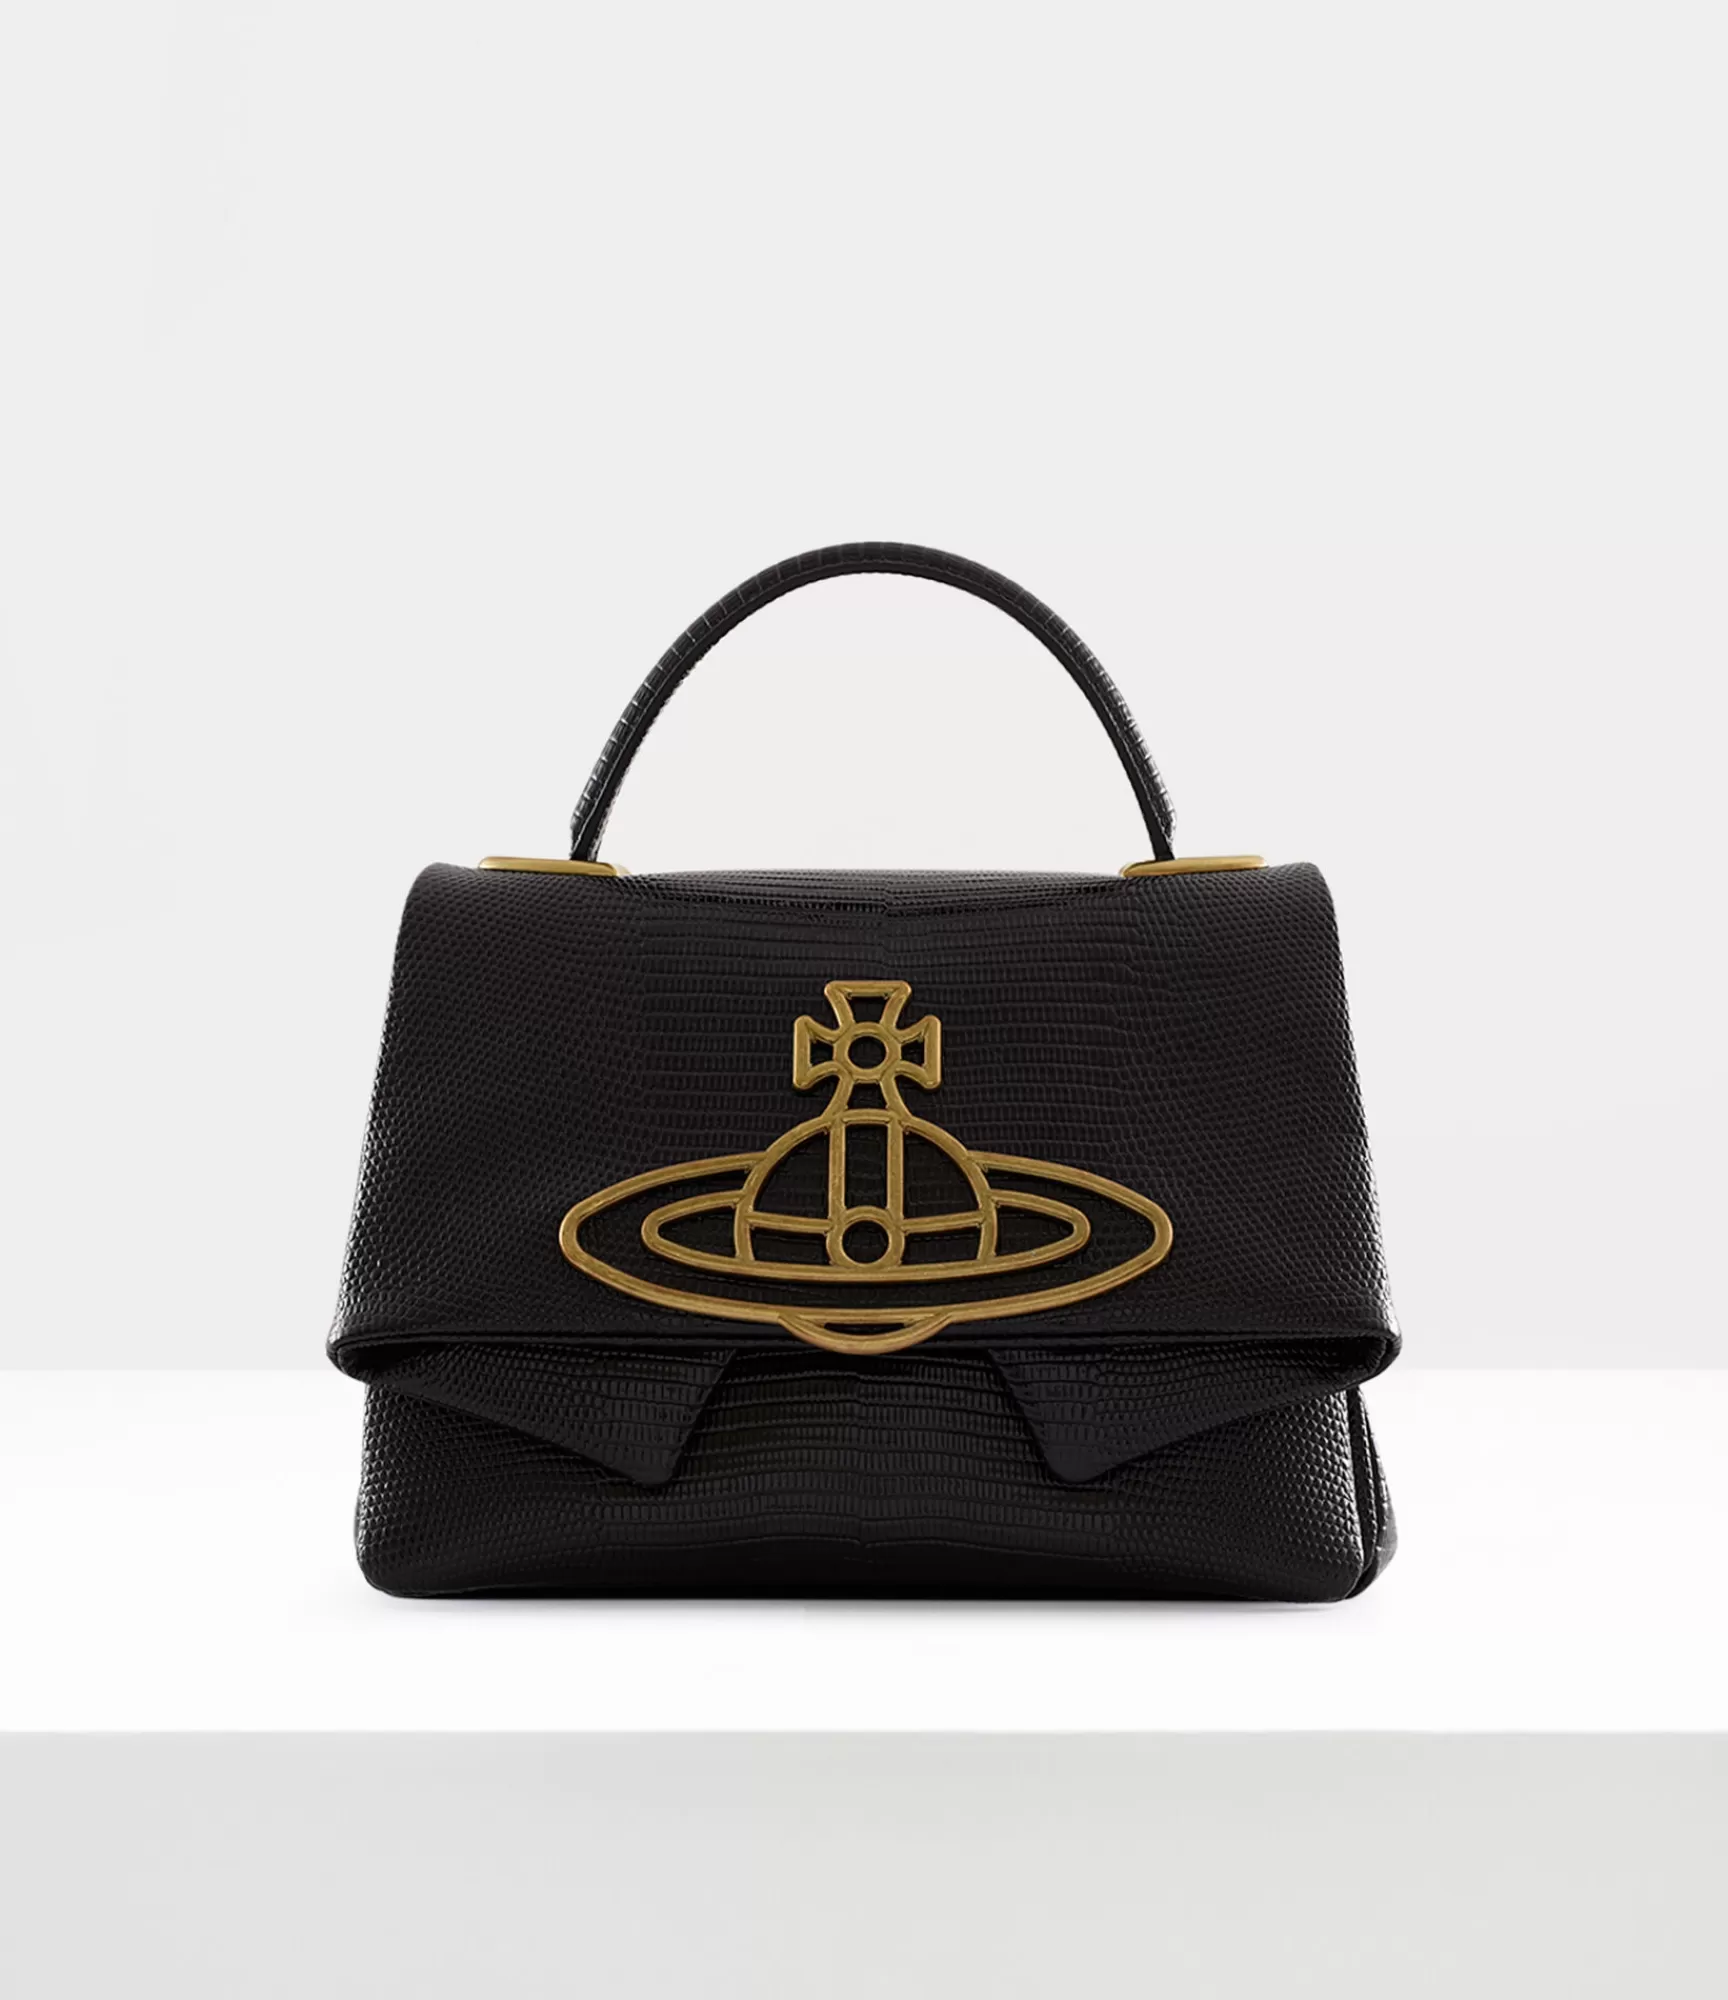 Vivienne Westwood Handbags*Sibyl shoulder bag Black